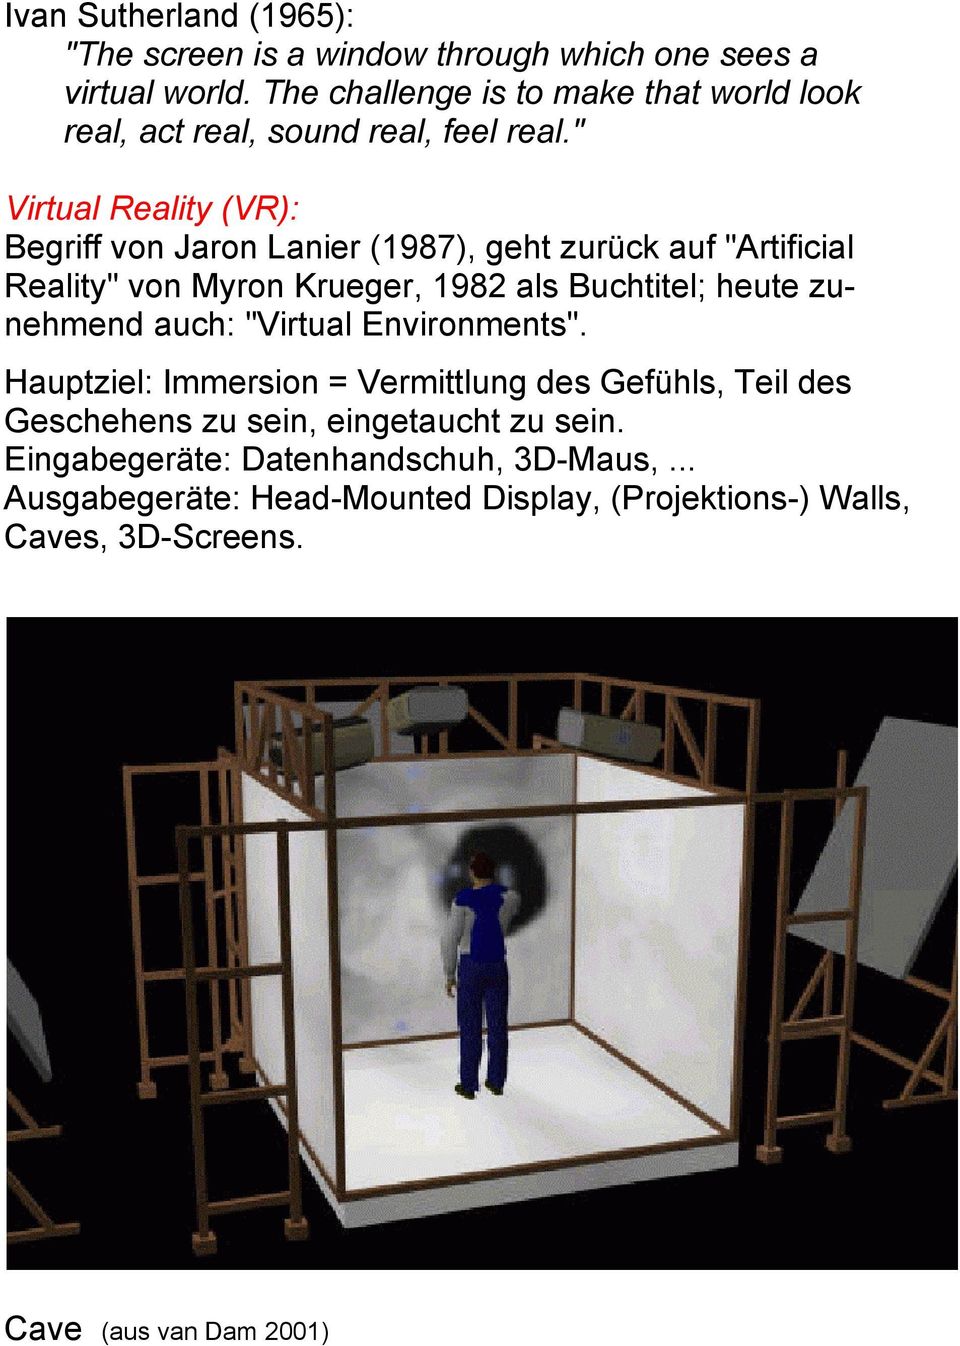 " Virtual Reality (VR): Begriff von Jaron Lanier (1987), geht zurück auf "Artificial Reality" von Myron Krueger, 1982 als Buchtitel; heute